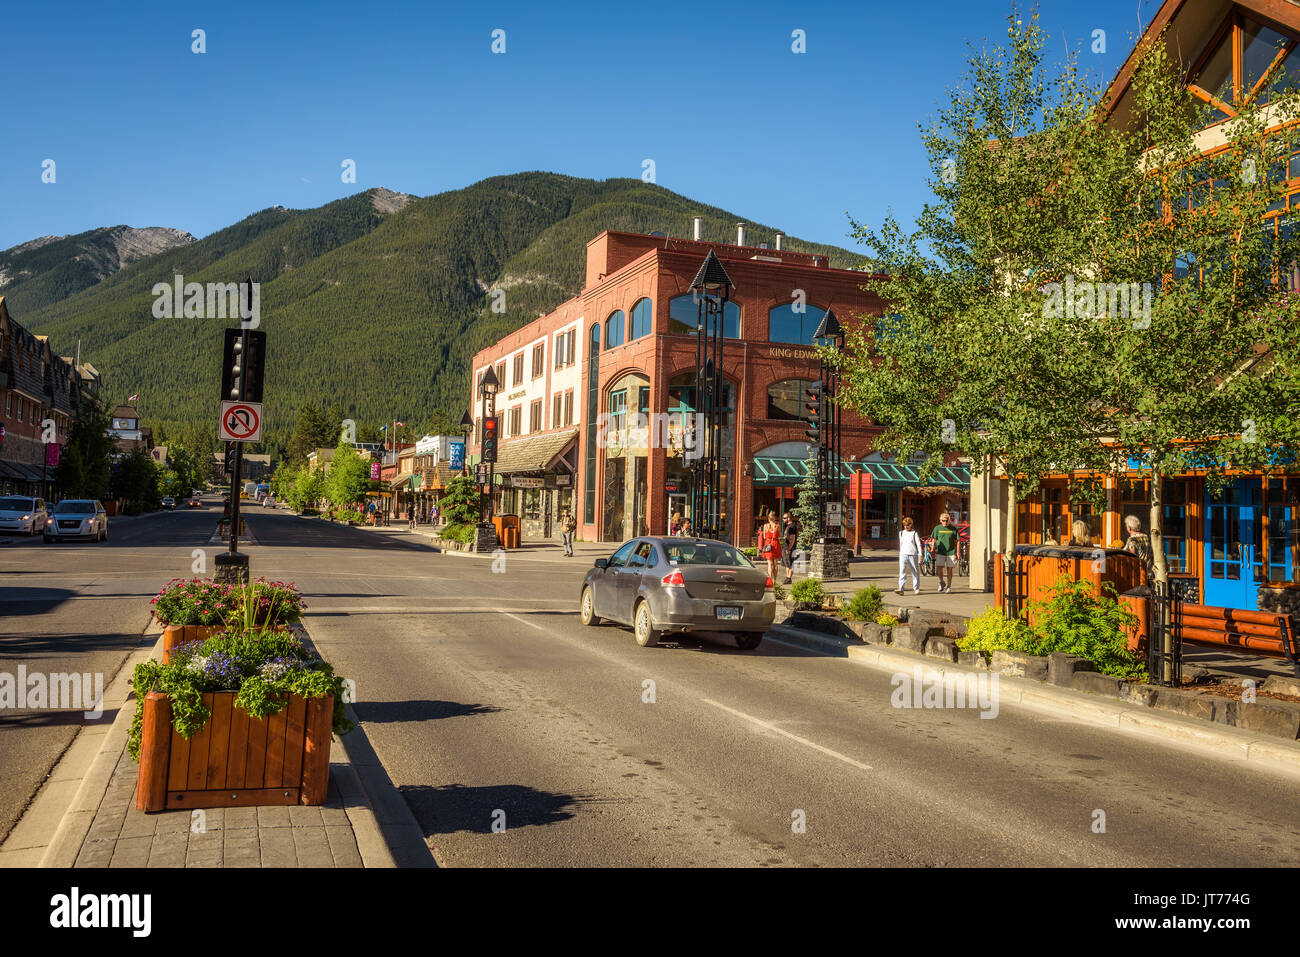 Malerischen street View von der Haupteinkaufsstraße Banff an einem sonnigen Sommertag. Stockfoto